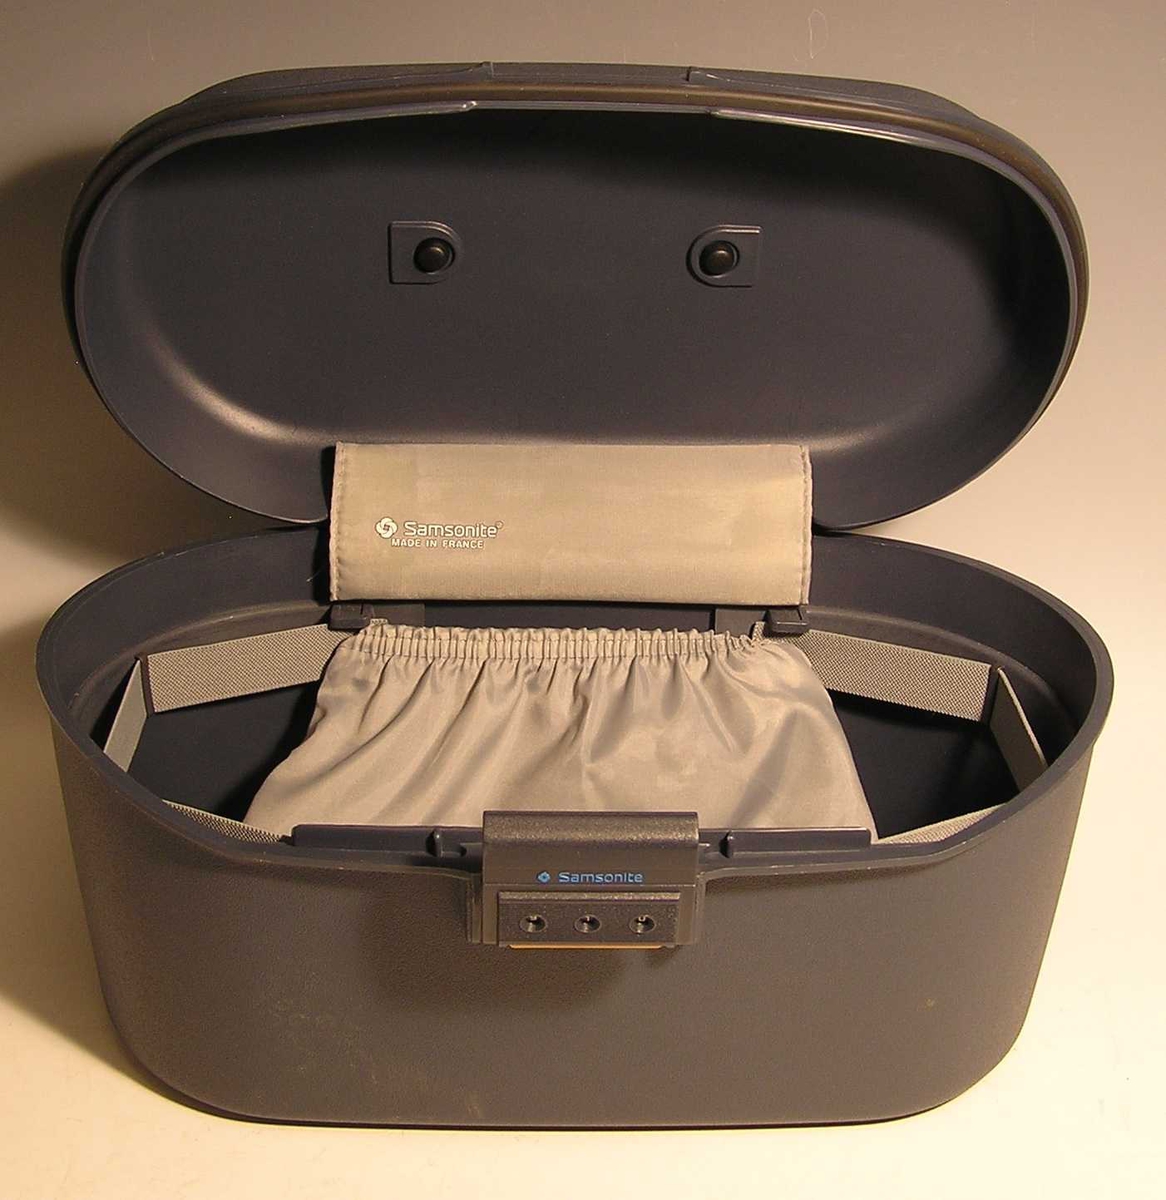 Form: ovalformet korpus med lokk , kodelås, innvendig lomme, håndtak
